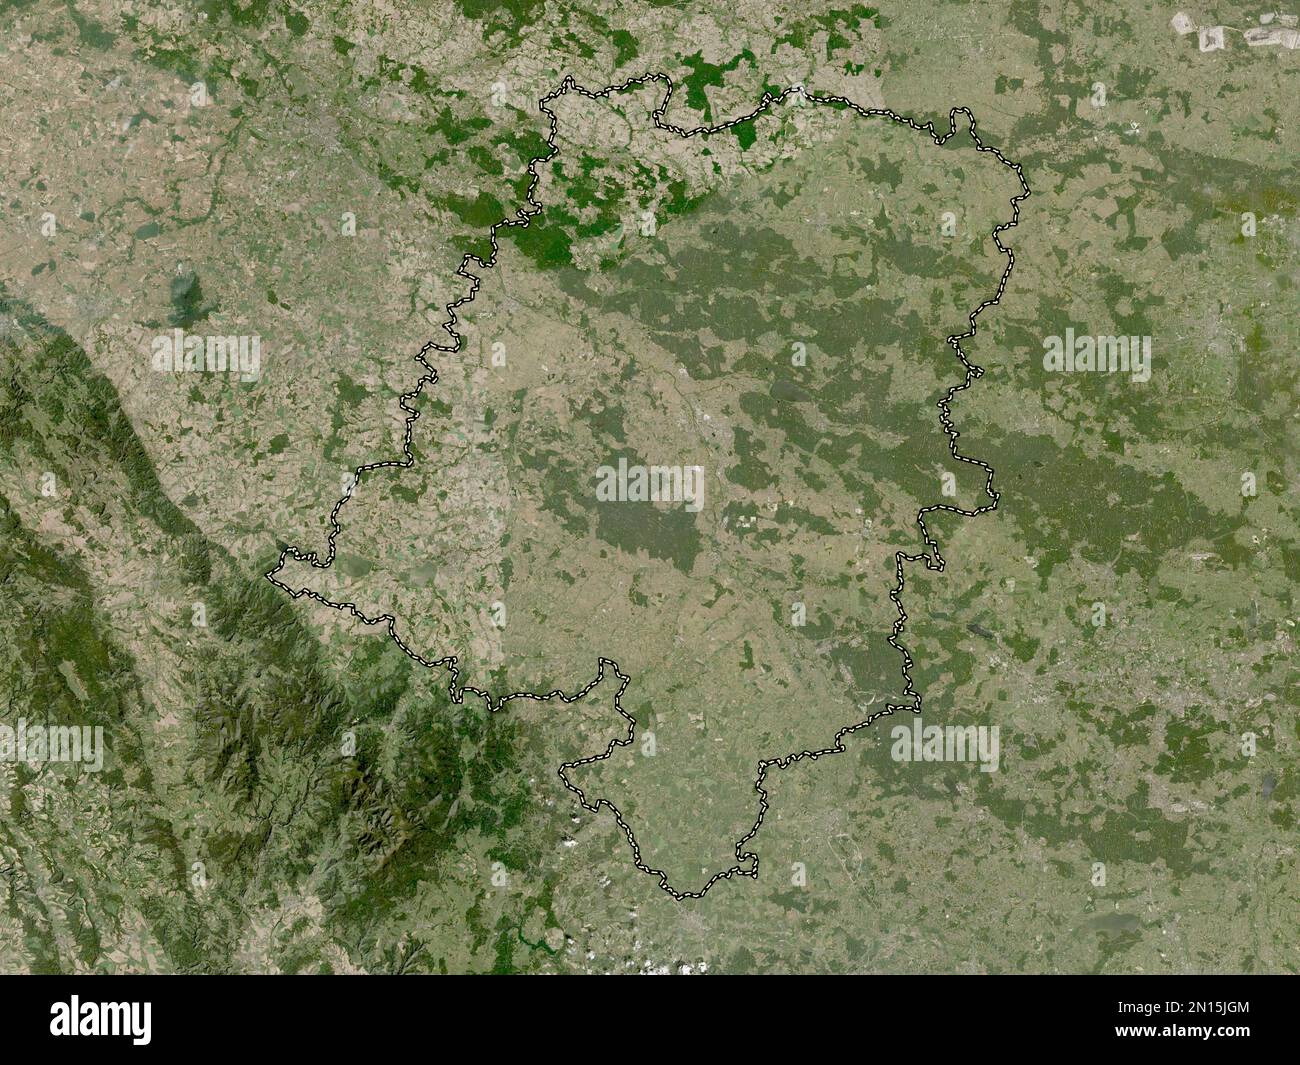 Opolskie, voïvodie|province de Pologne. Carte satellite basse résolution Banque D'Images